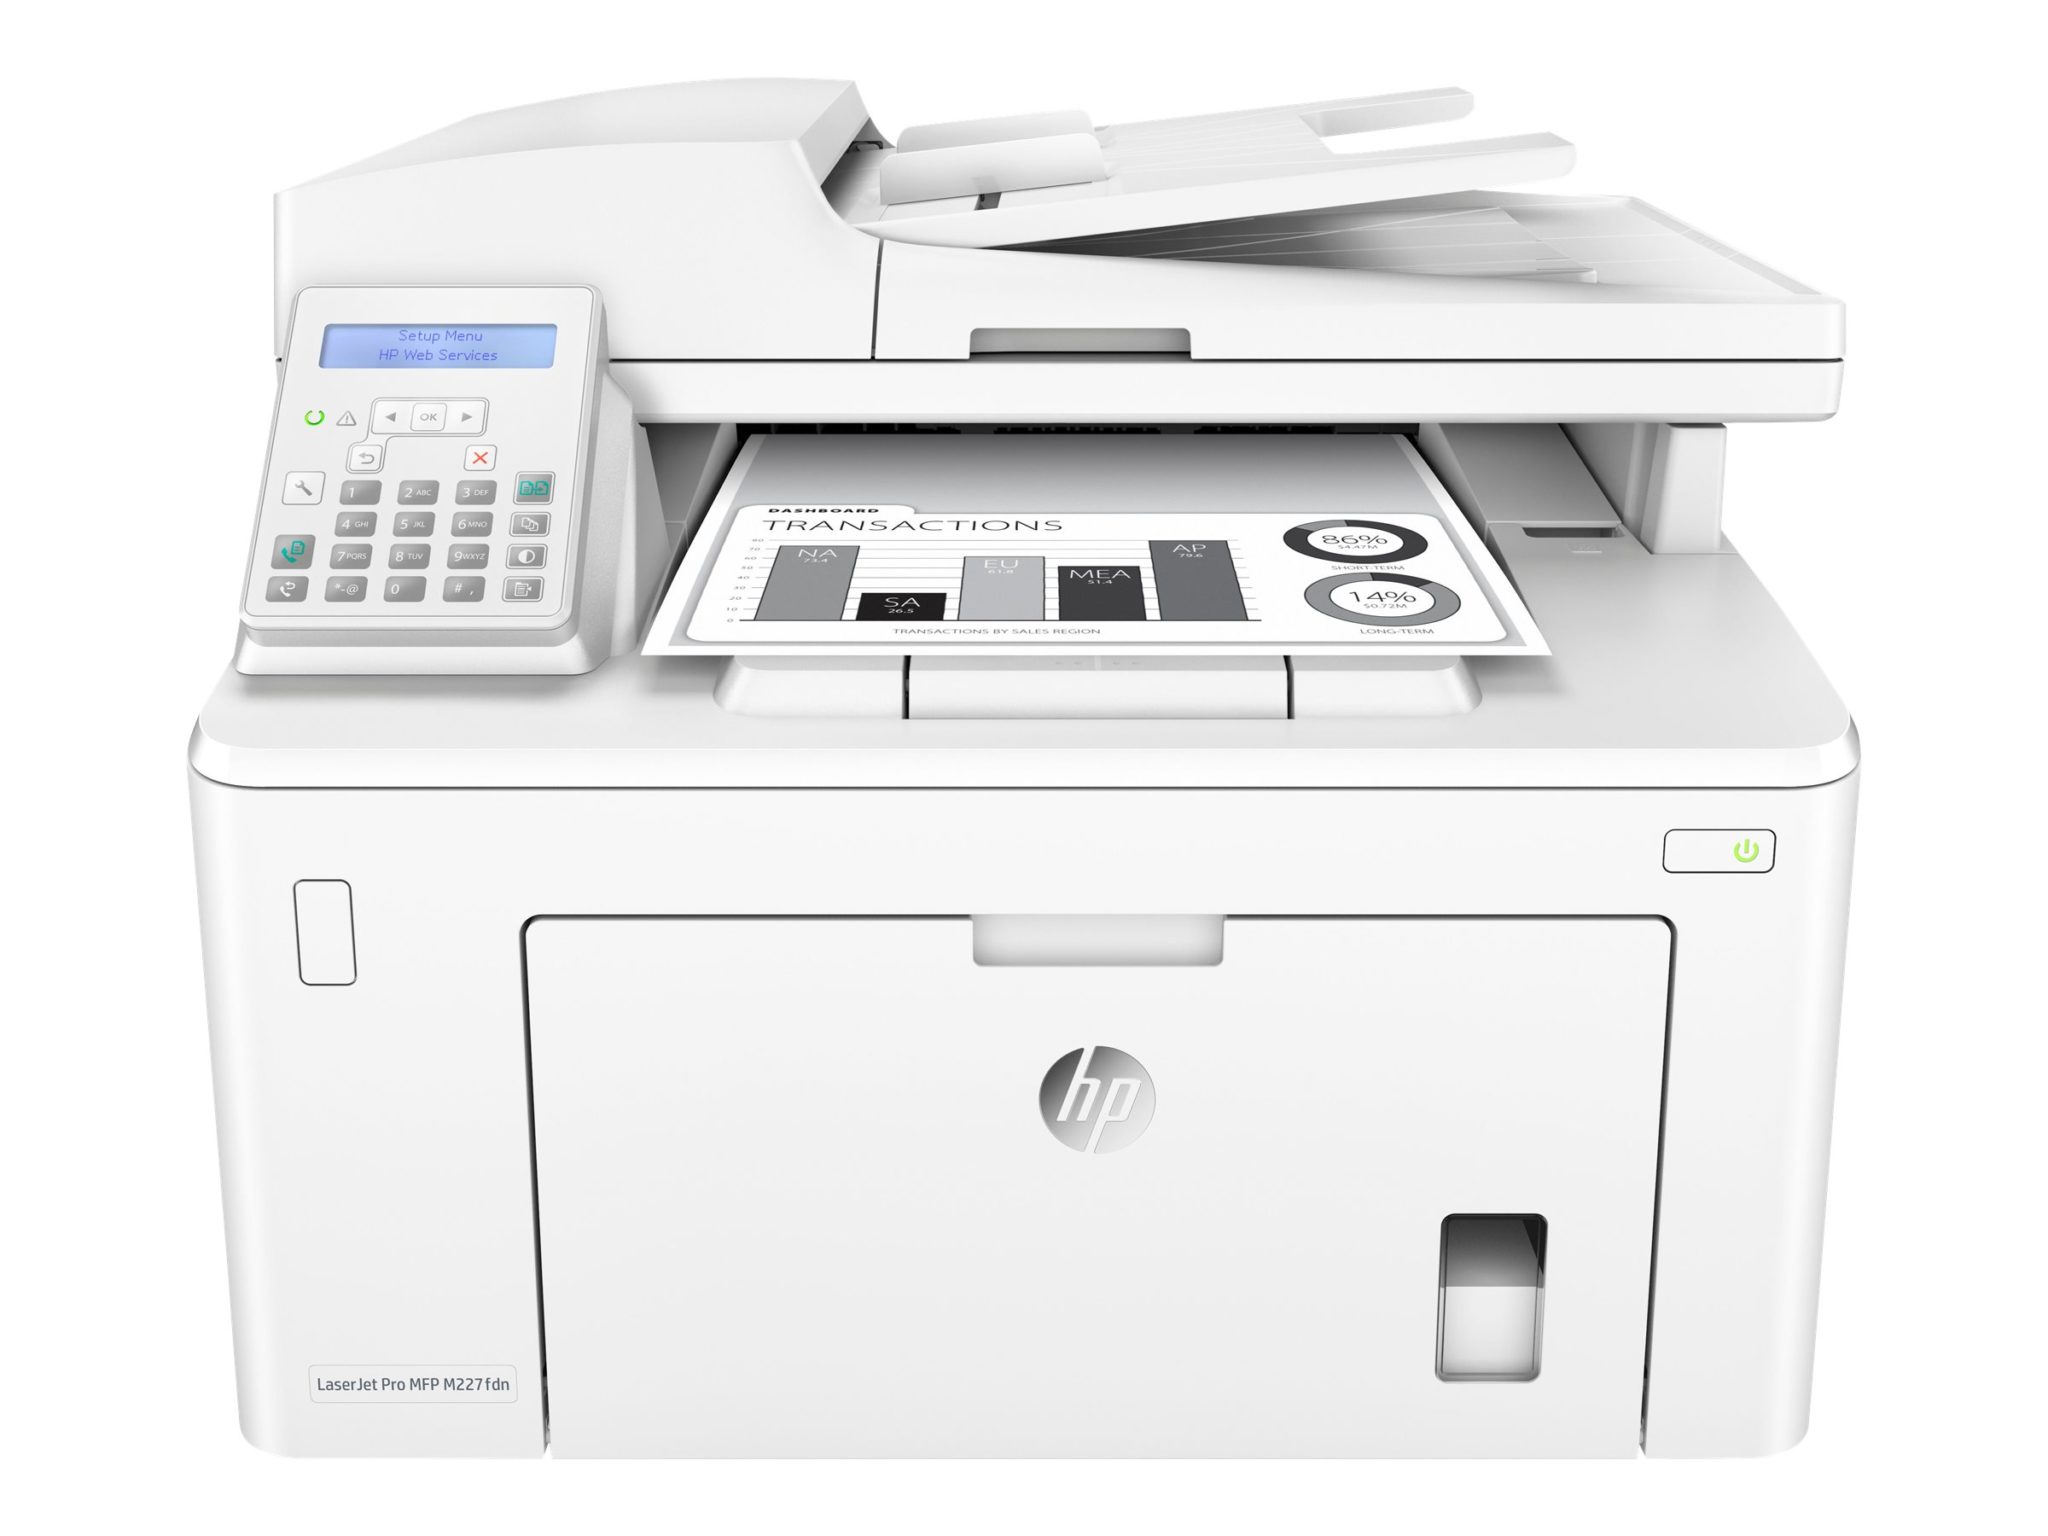 HP LaserJet Pro All-In-One M227fdn Printer